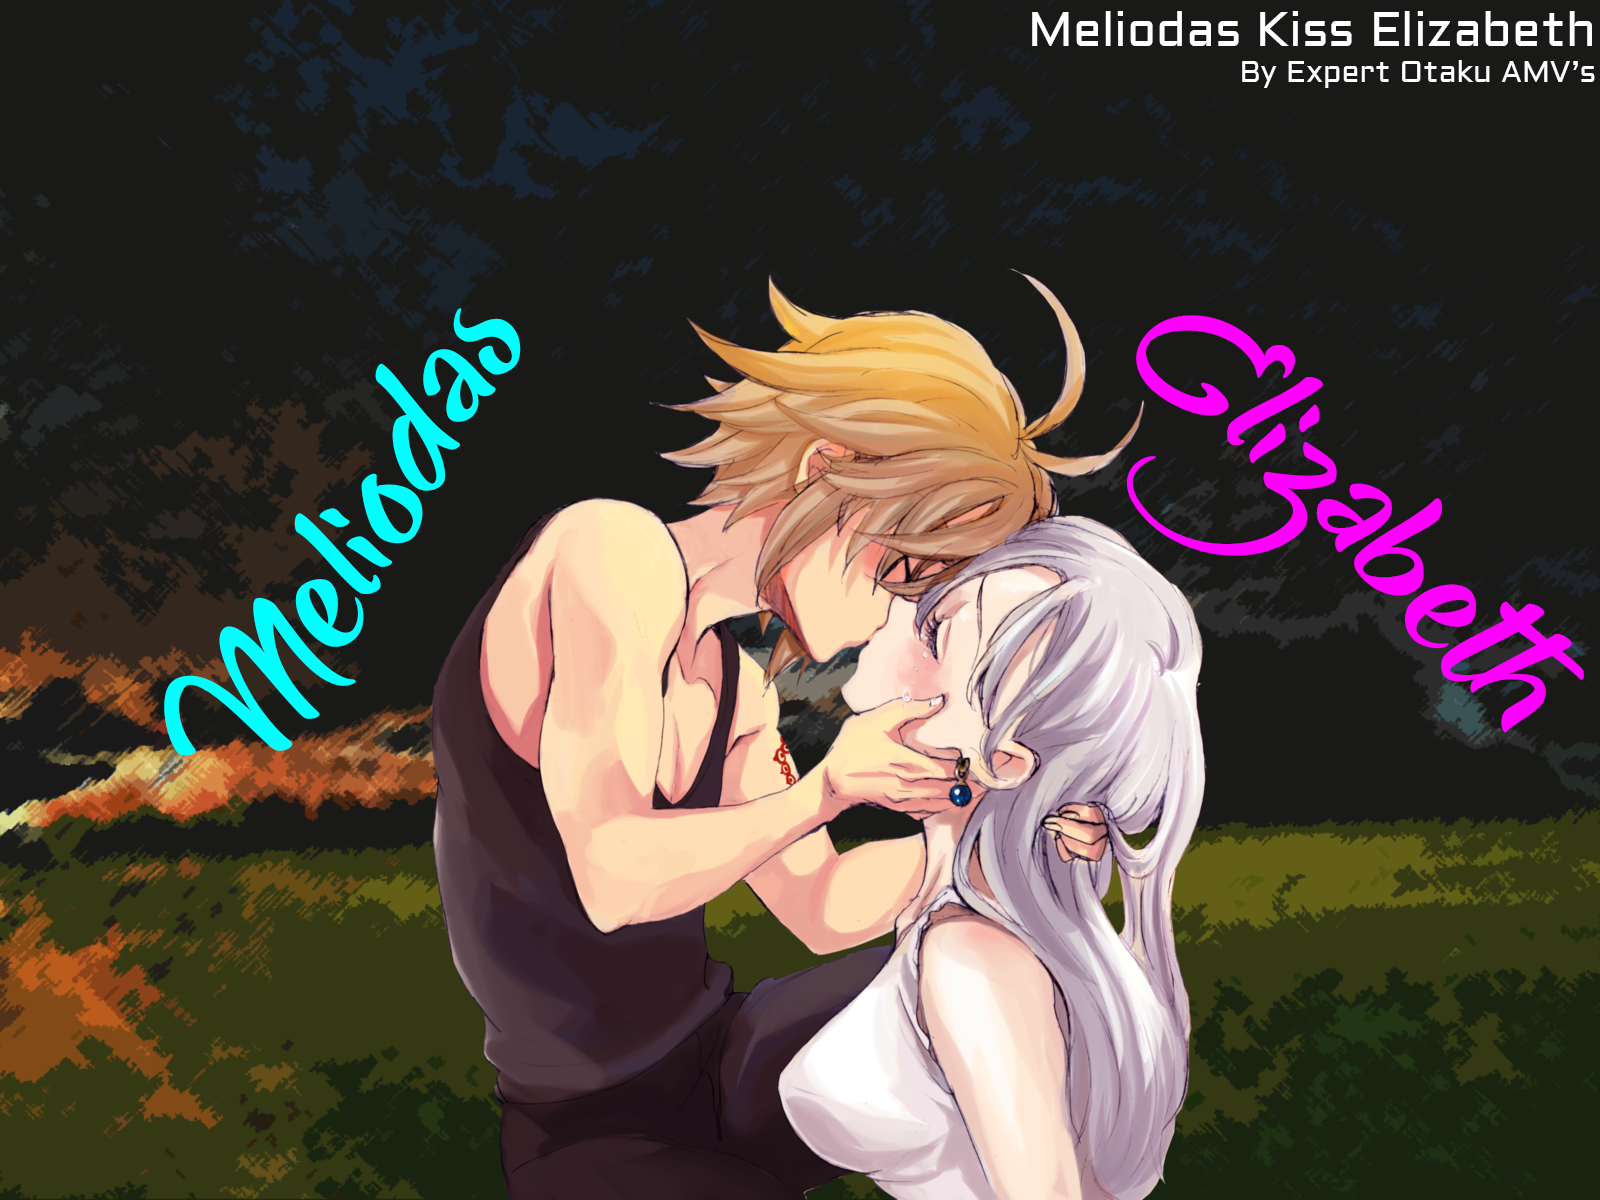 Meliodas and elizabeth kissing